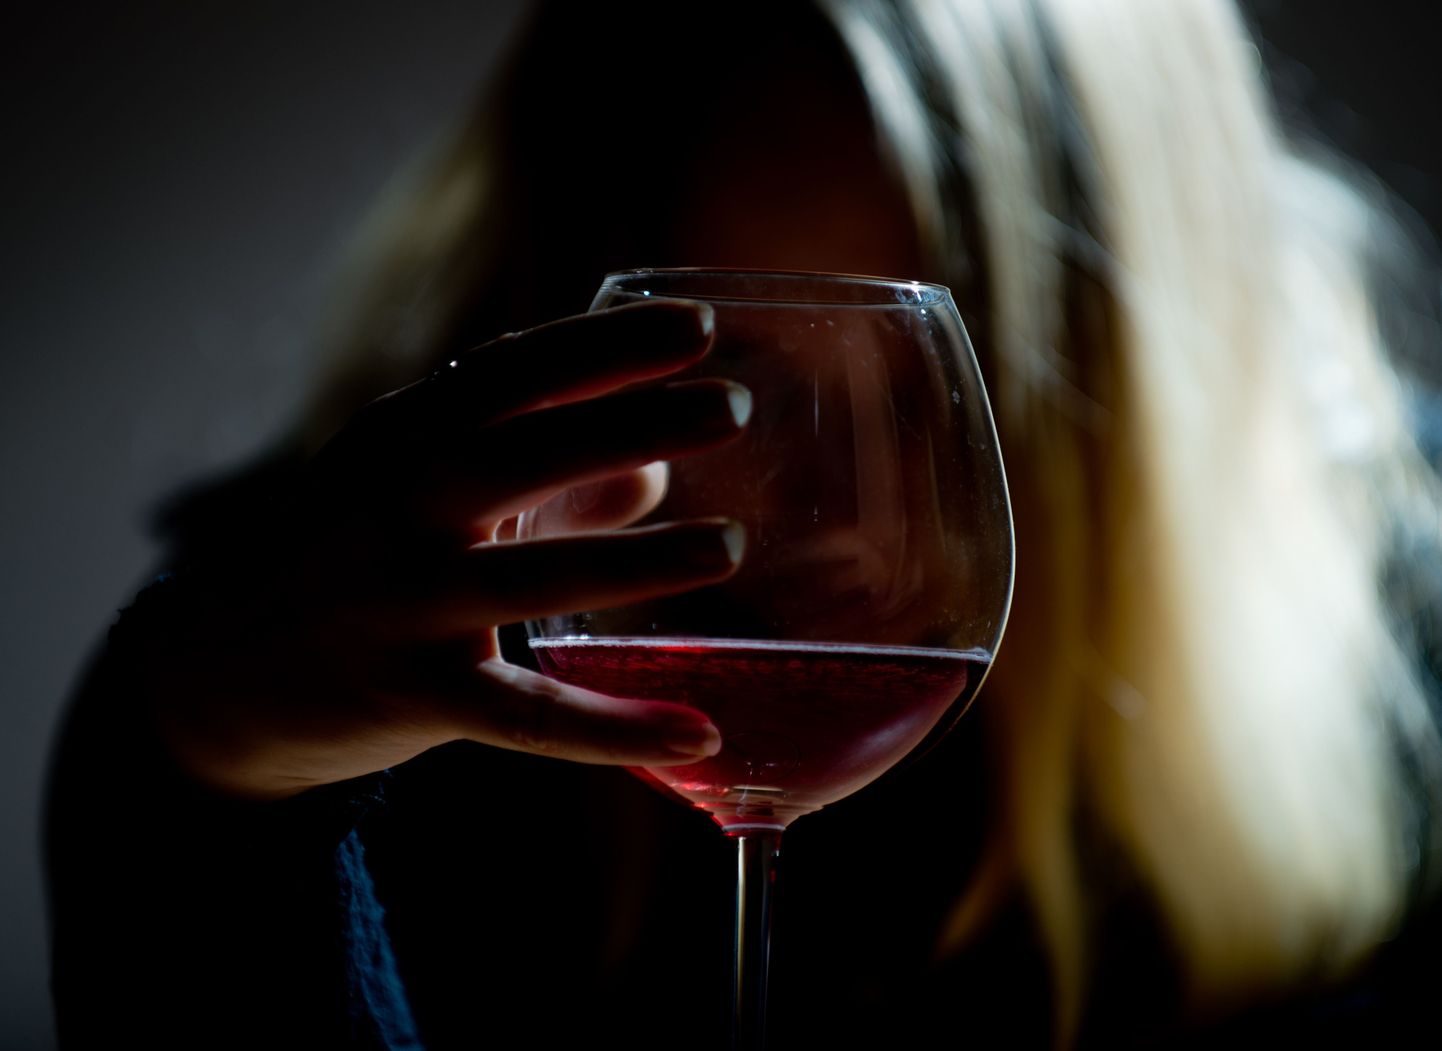 Aina enam on Eestis alkohoolikute seas noori naisi, kelle sõltuvus saab alguse igaõhtusest veinist.